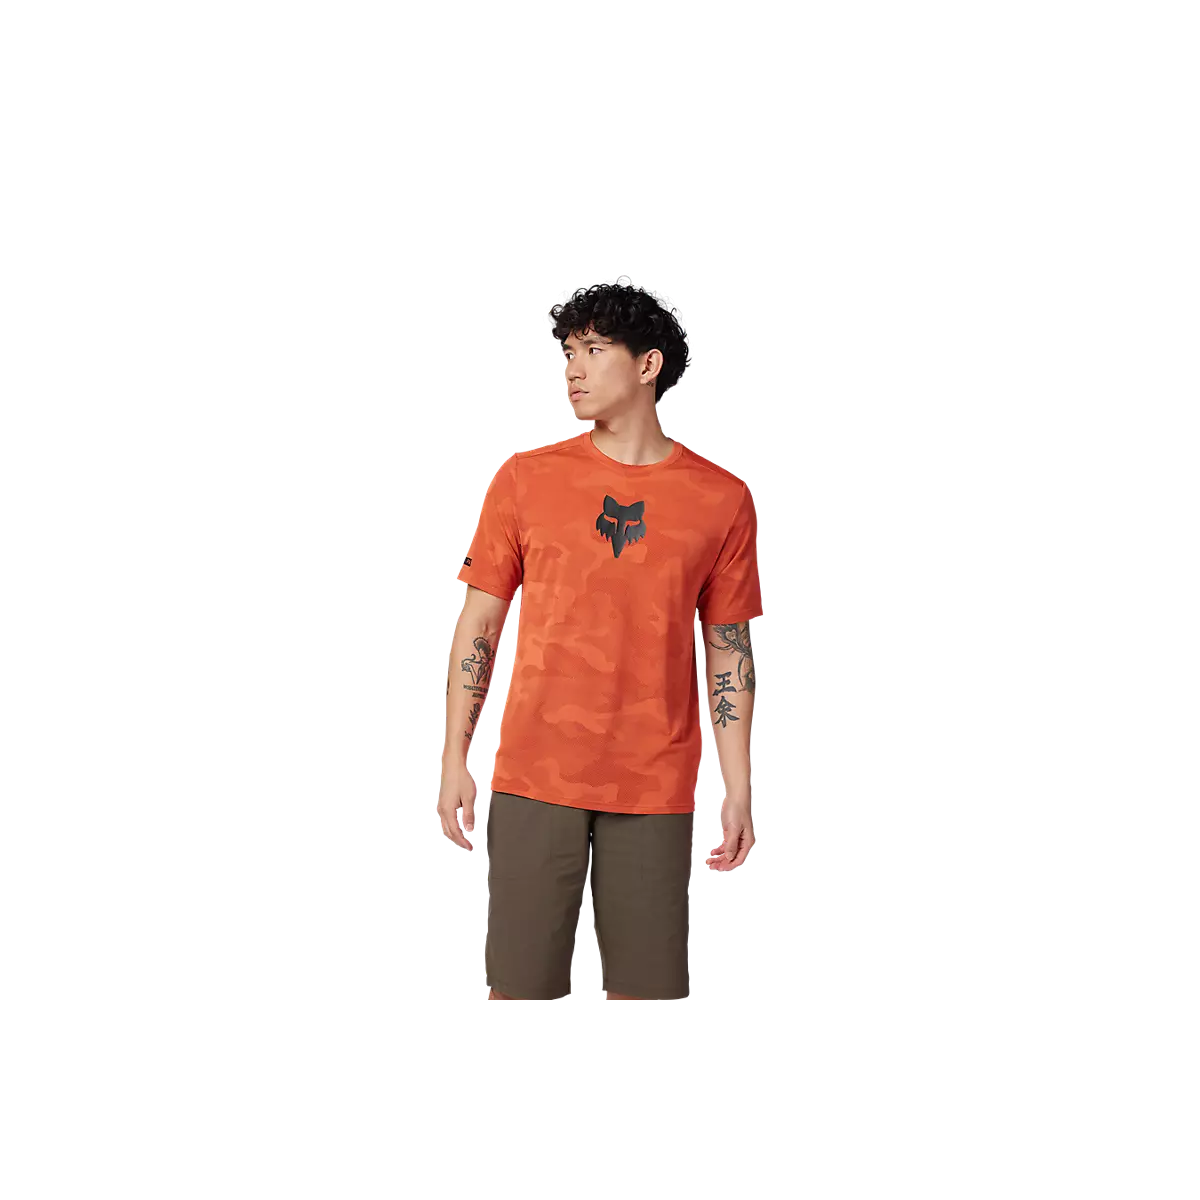 Camiseta técnica de manga corta Fox Ranger Tru Dri disponible en varios colores y tallas.